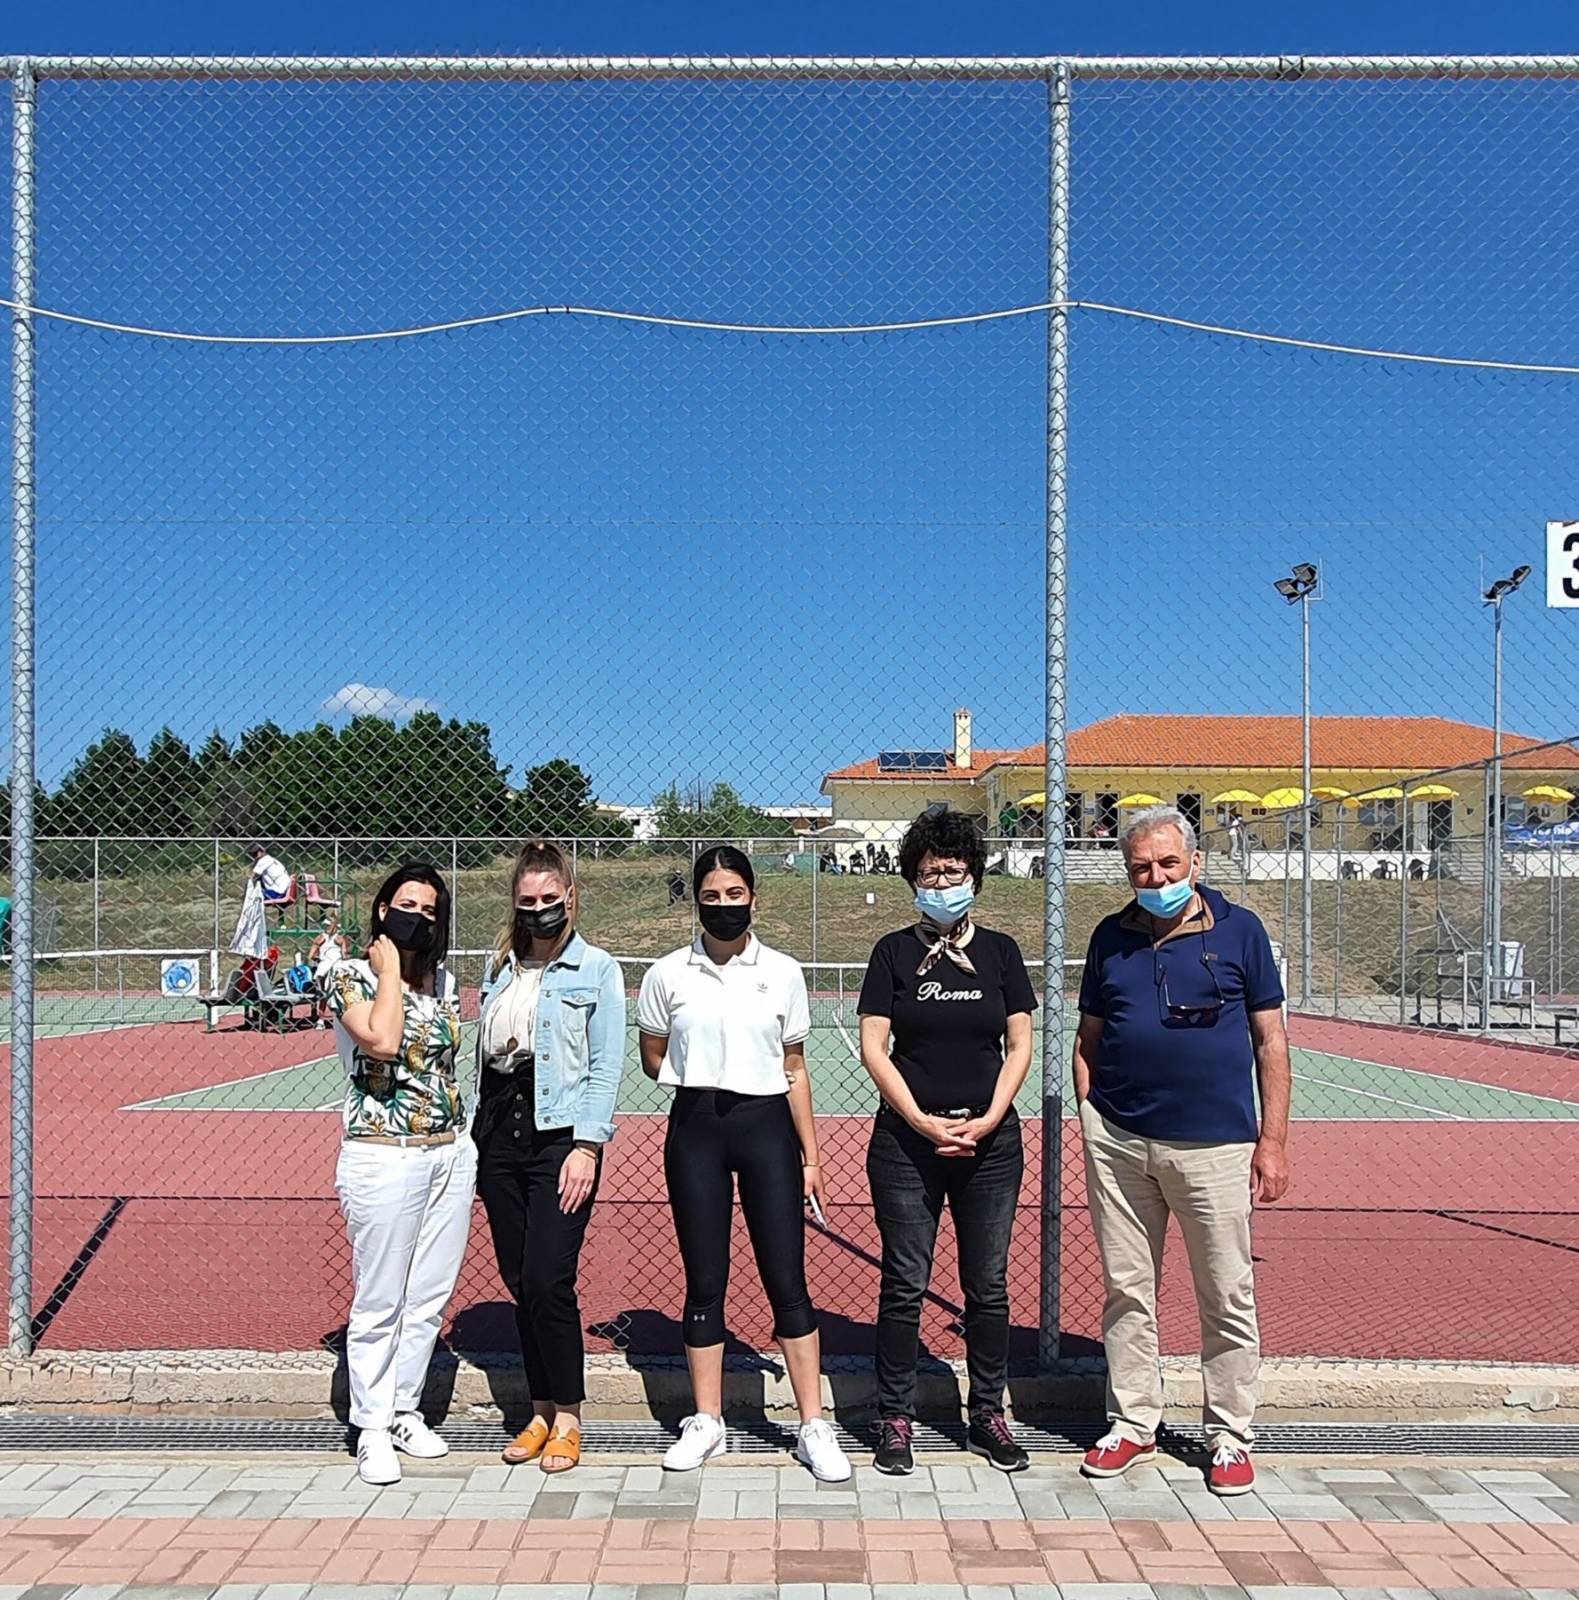 Εθελοντές και εθελόντριες του Πανεπιστημίου Δυτικής Μακεδονίας στο Ευρωπαϊκό πρωτάθλημα «Tennis Europe 2021»